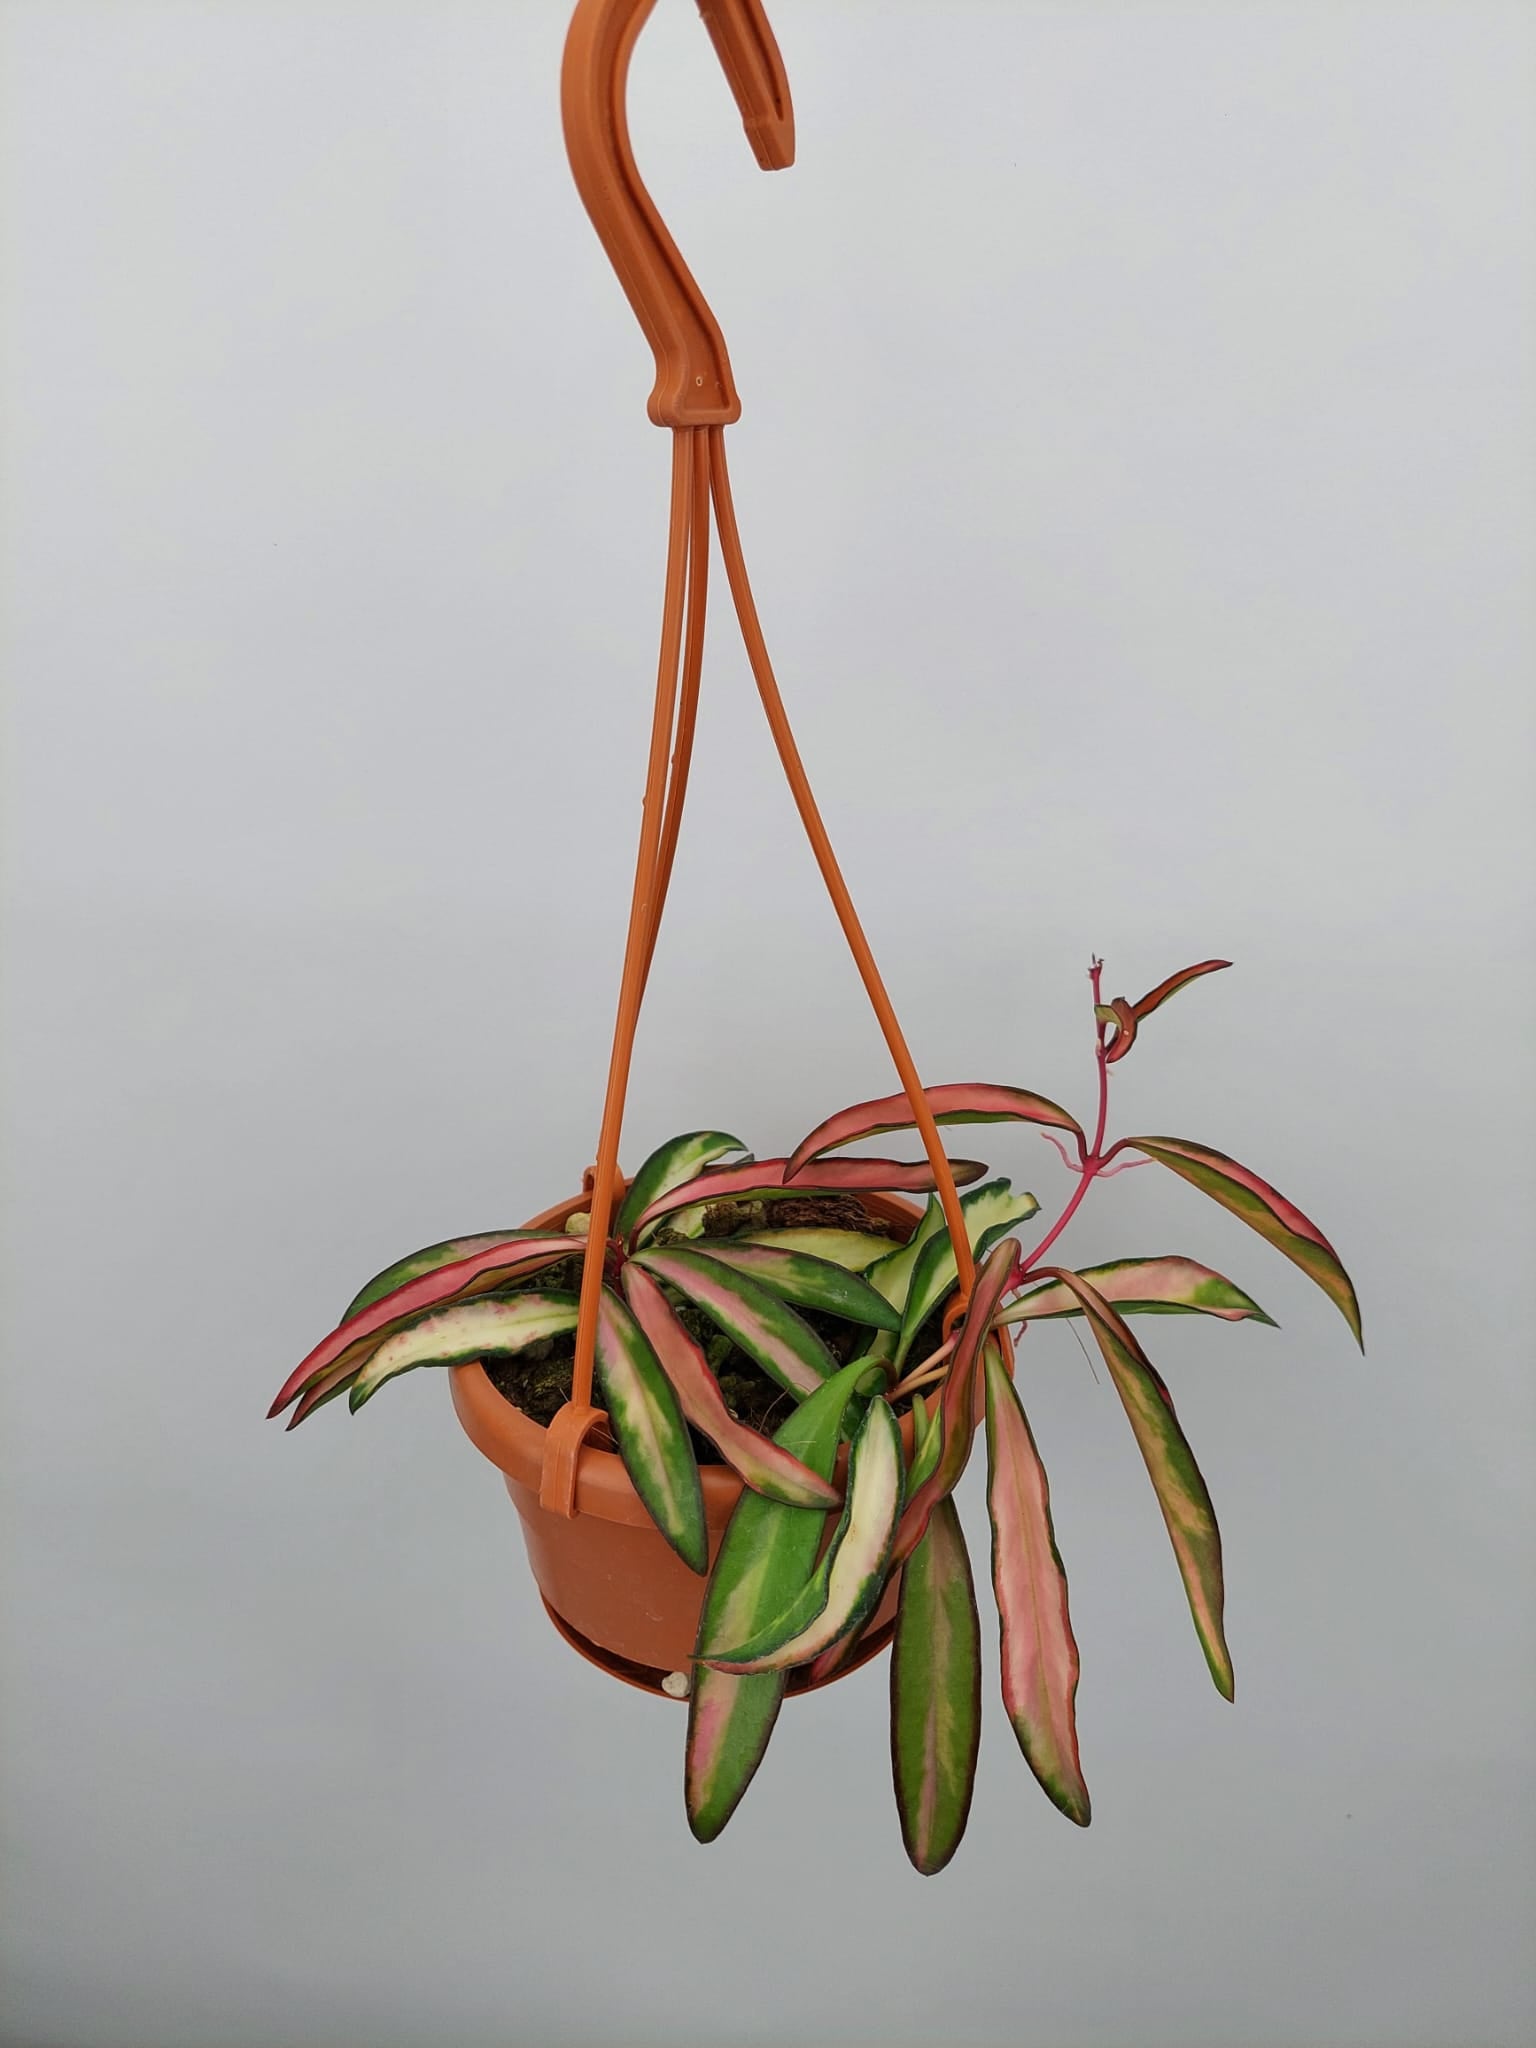 Hoya wayetii (kentiana) variegata